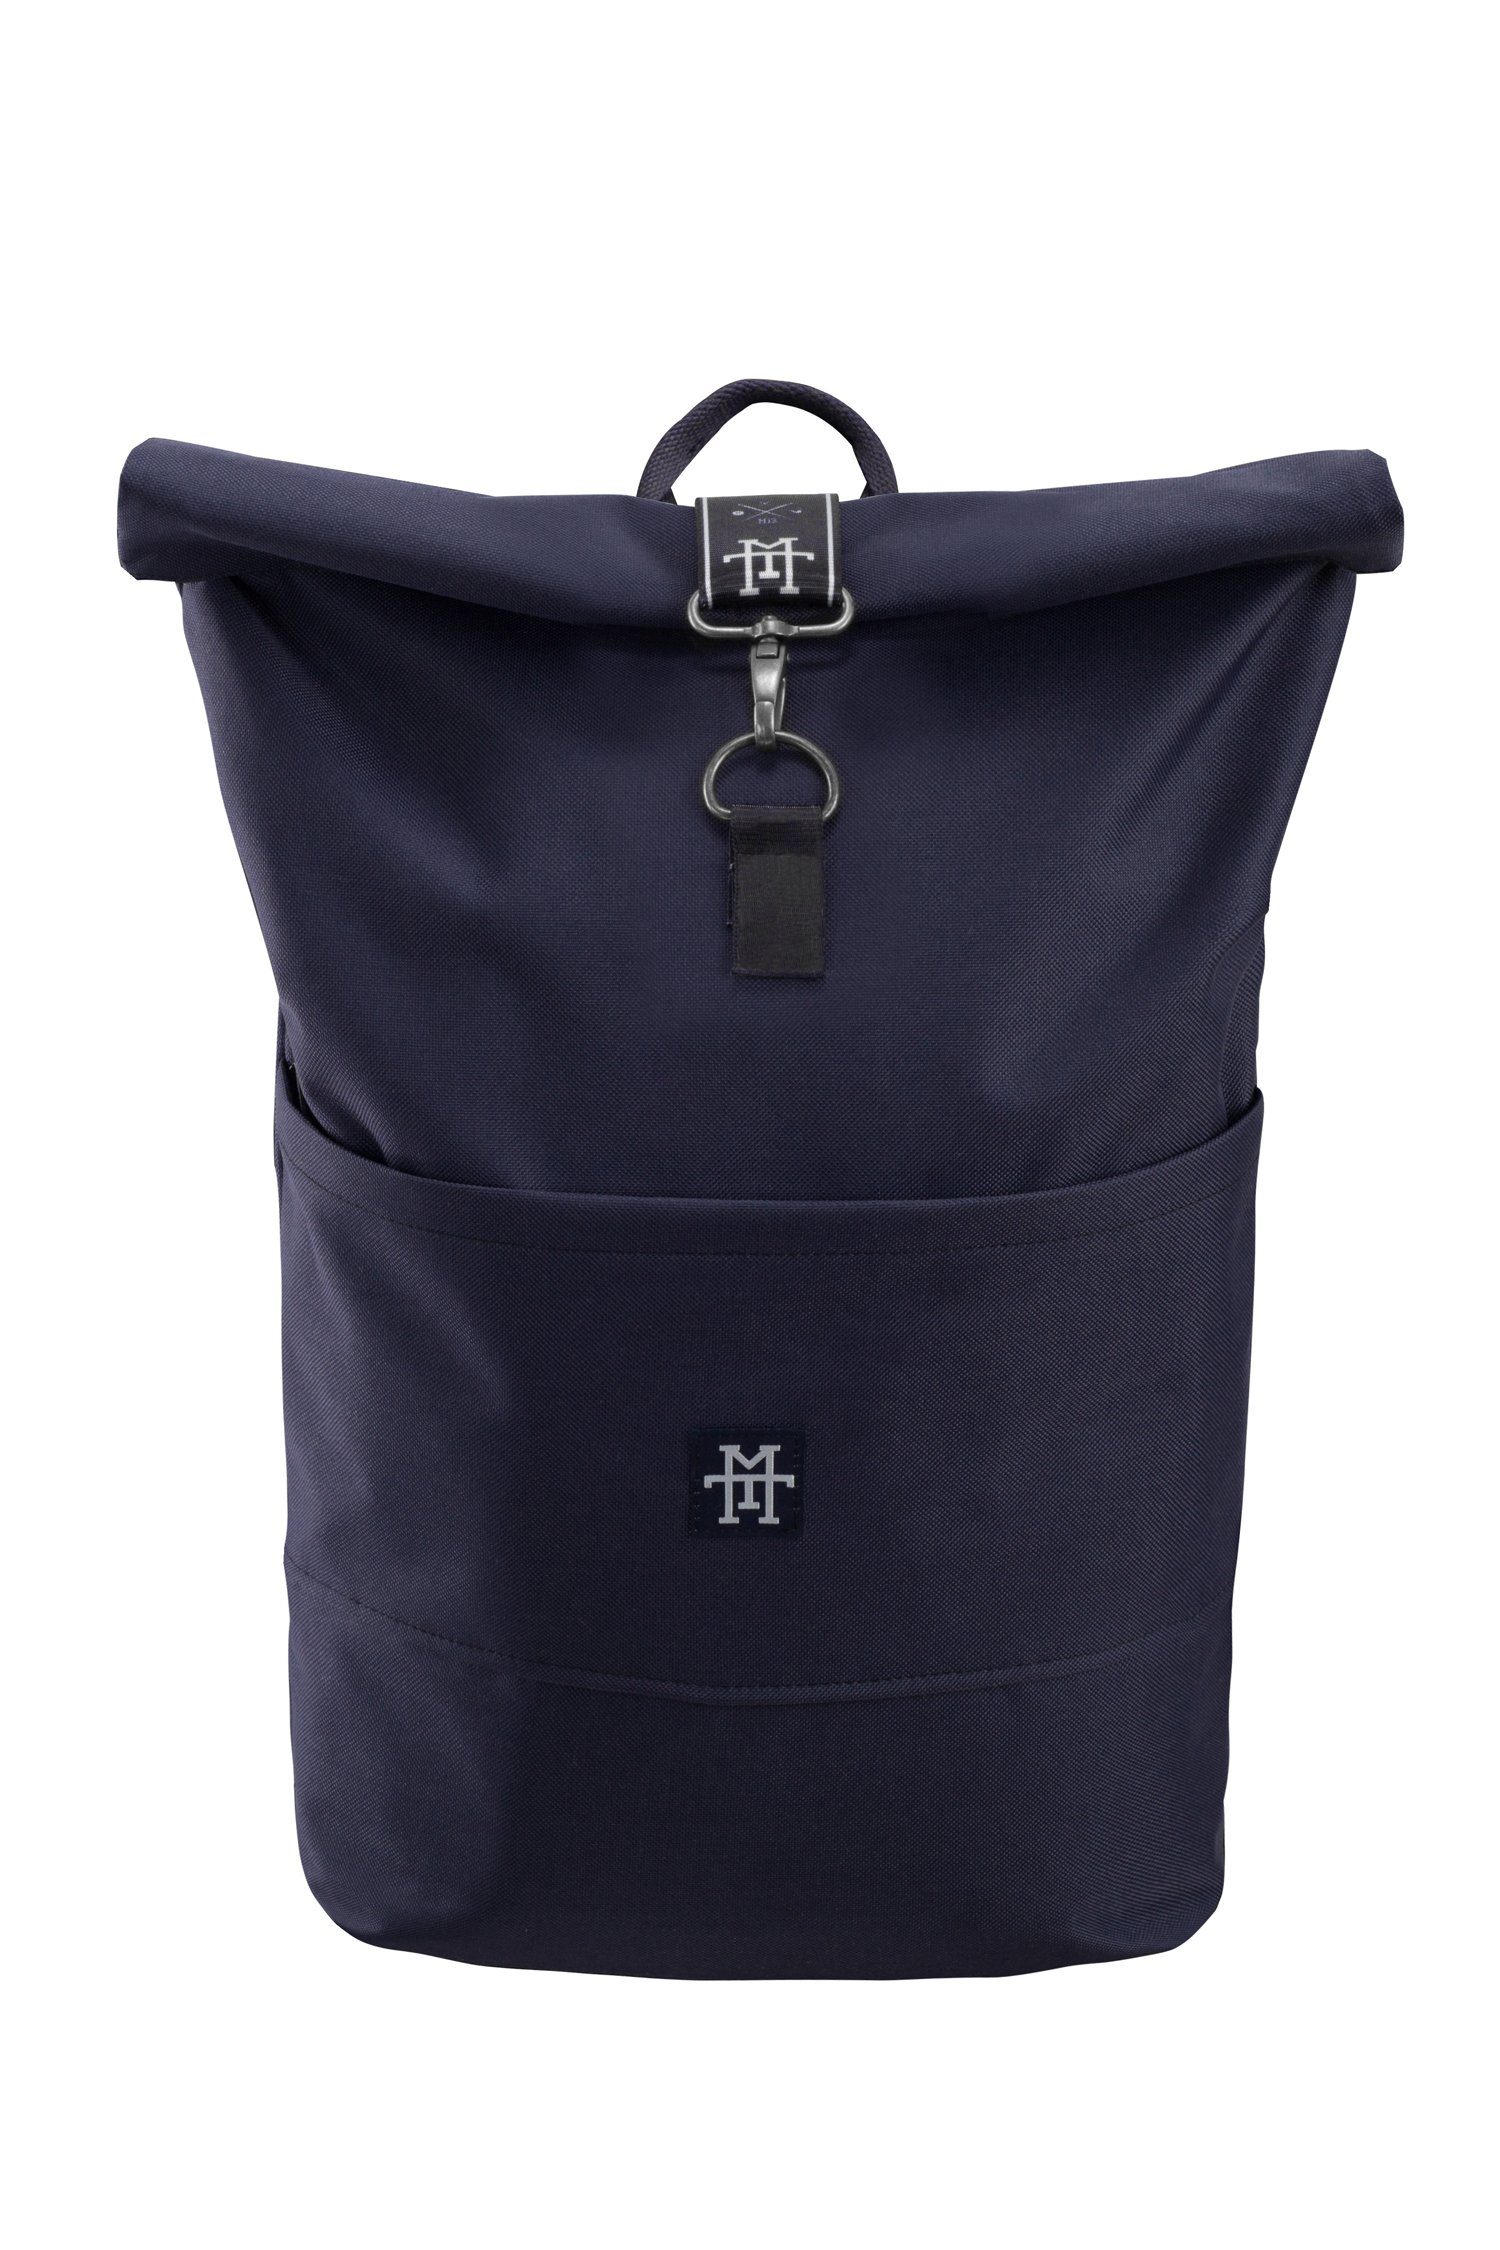 Manufaktur13 Tagesrucksack Roll-Top Rucksack Edition - Taped verstellbare mit wasserdicht/wasserabweisend, Backpack Navy Gurte Rollverschluss